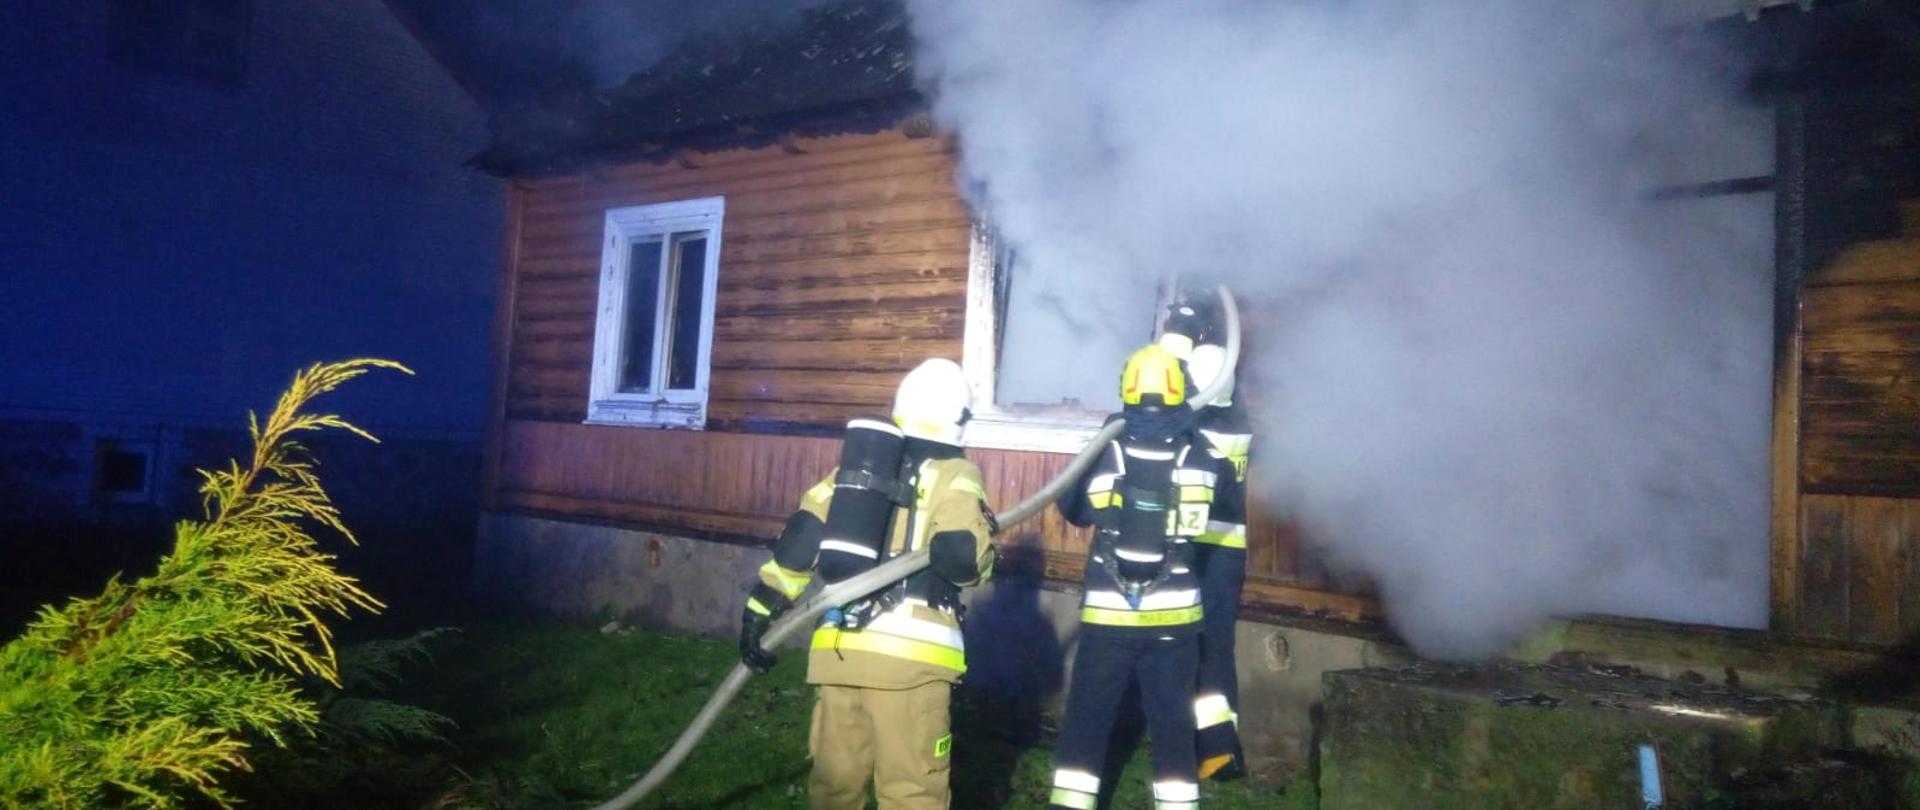 Zdjęcie przedstawia dom drewniany, w którym wybuchł pożar. Rota strażaków podaje wodę przez okno do środka skąd wydobywa się gesty dym i para wodna.